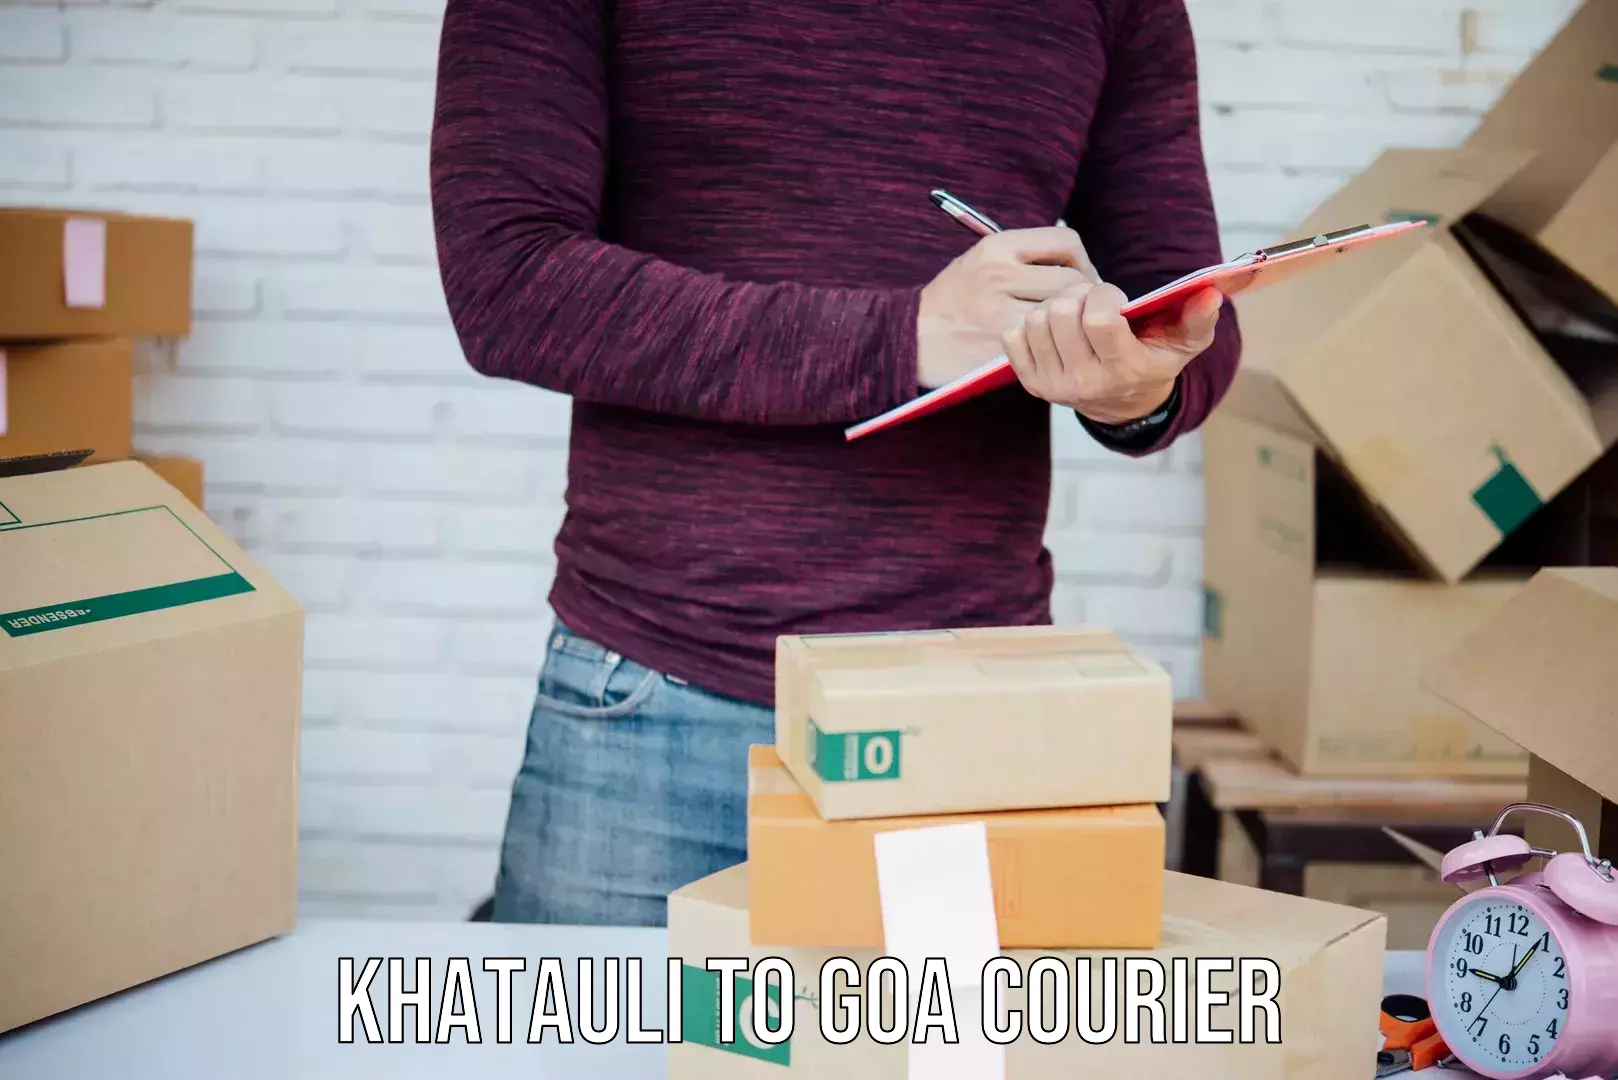 Expedited shipping methods Khatauli to IIT Goa